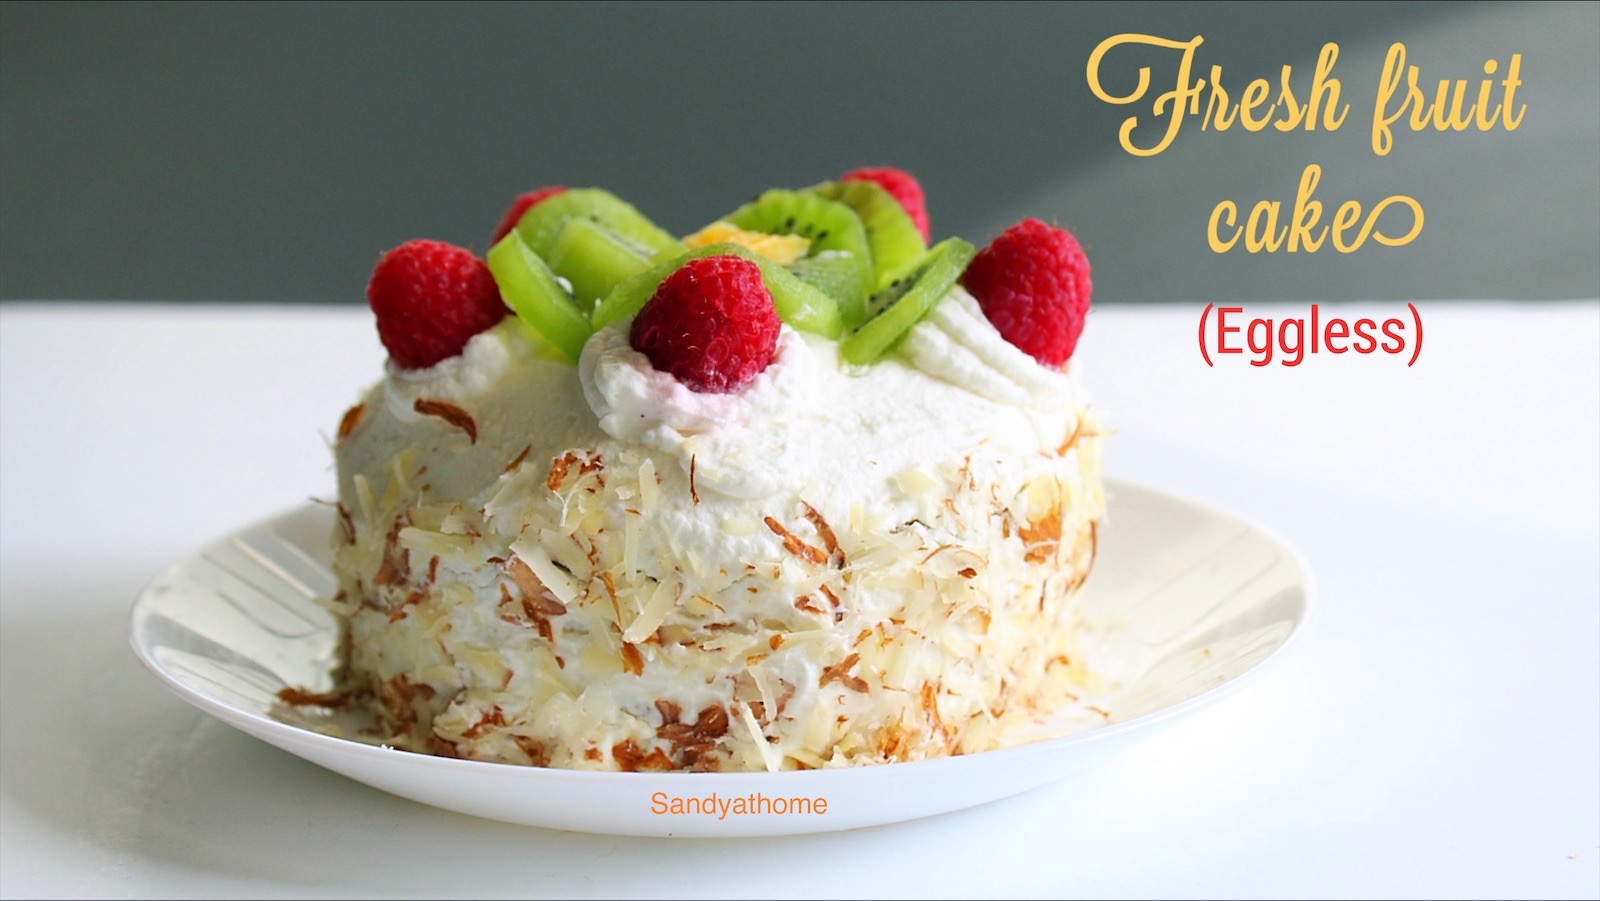 Fresh fruit cake recipe, Eggless fruit cake - Sandhya's recipes